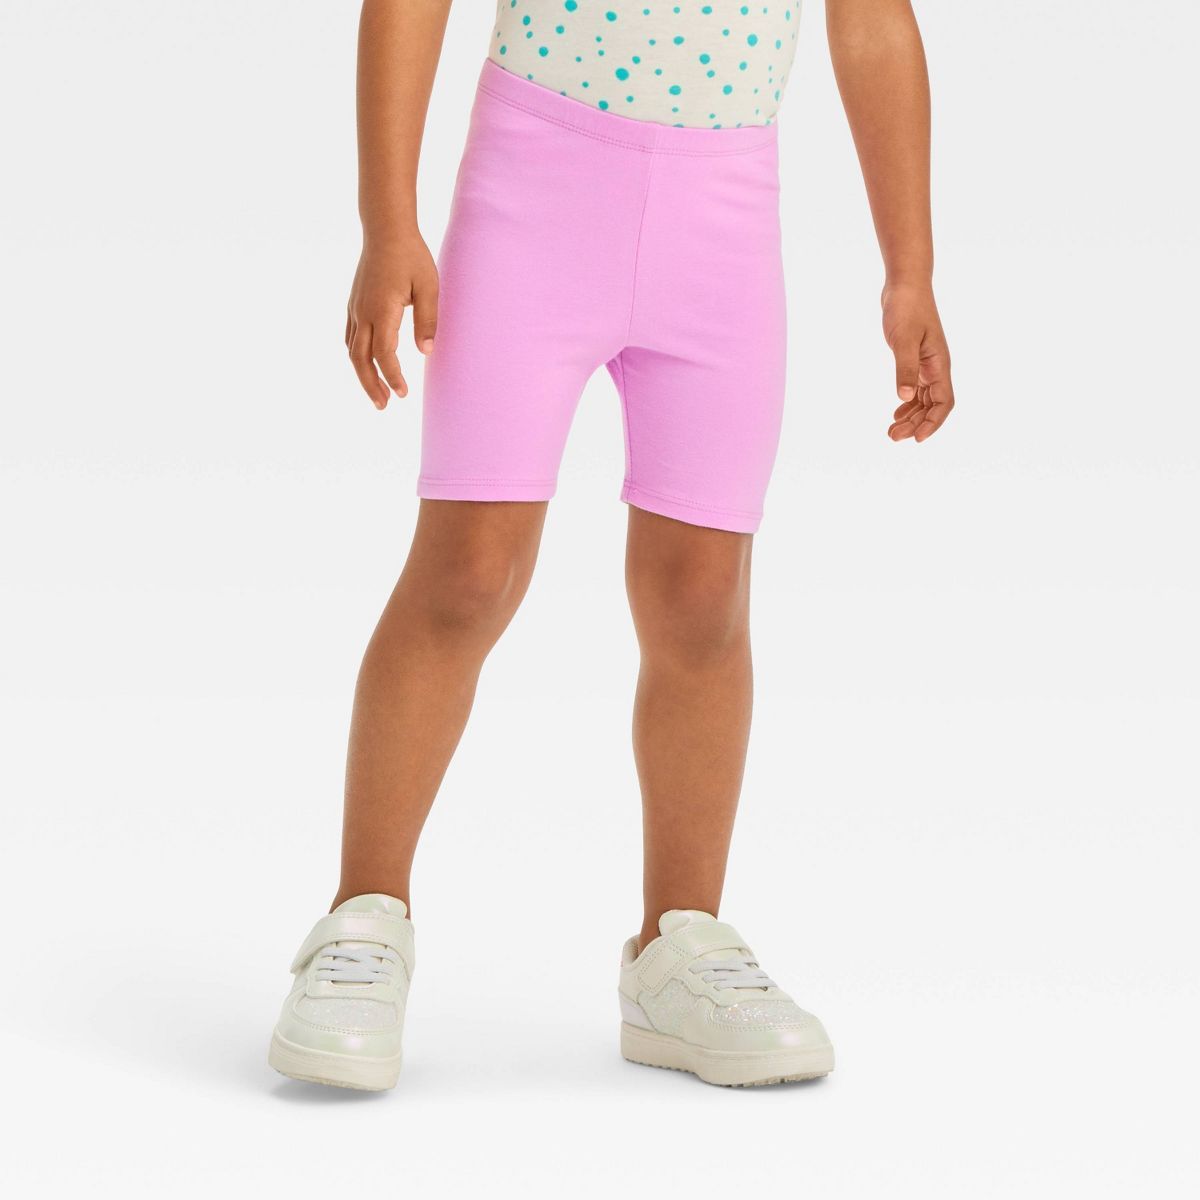 Toddler Girls' Verve Shorts - Cat & Jack™ Violet 18M | Target